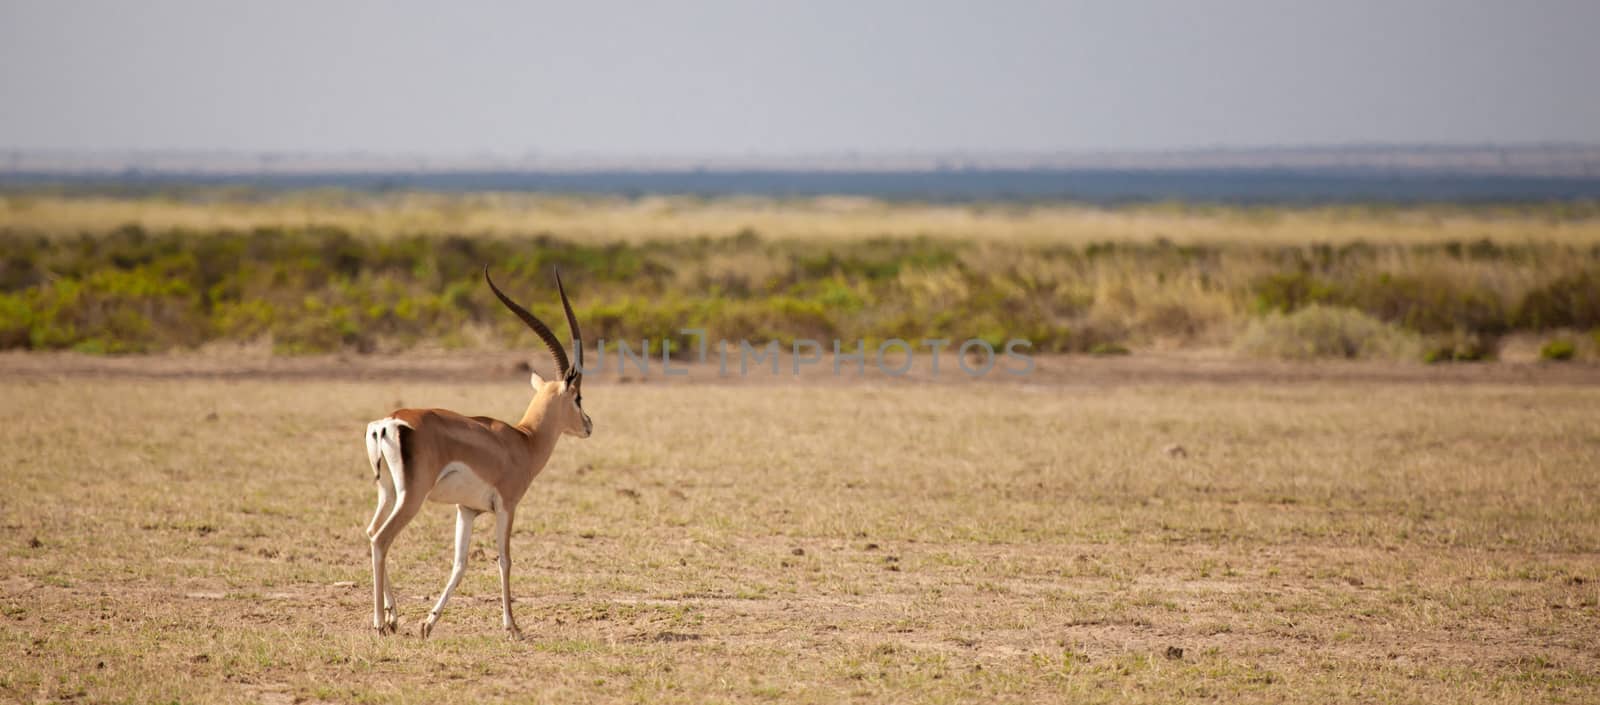 Antelope is walking away, scenery of the Kenyan savannah by 25ehaag6